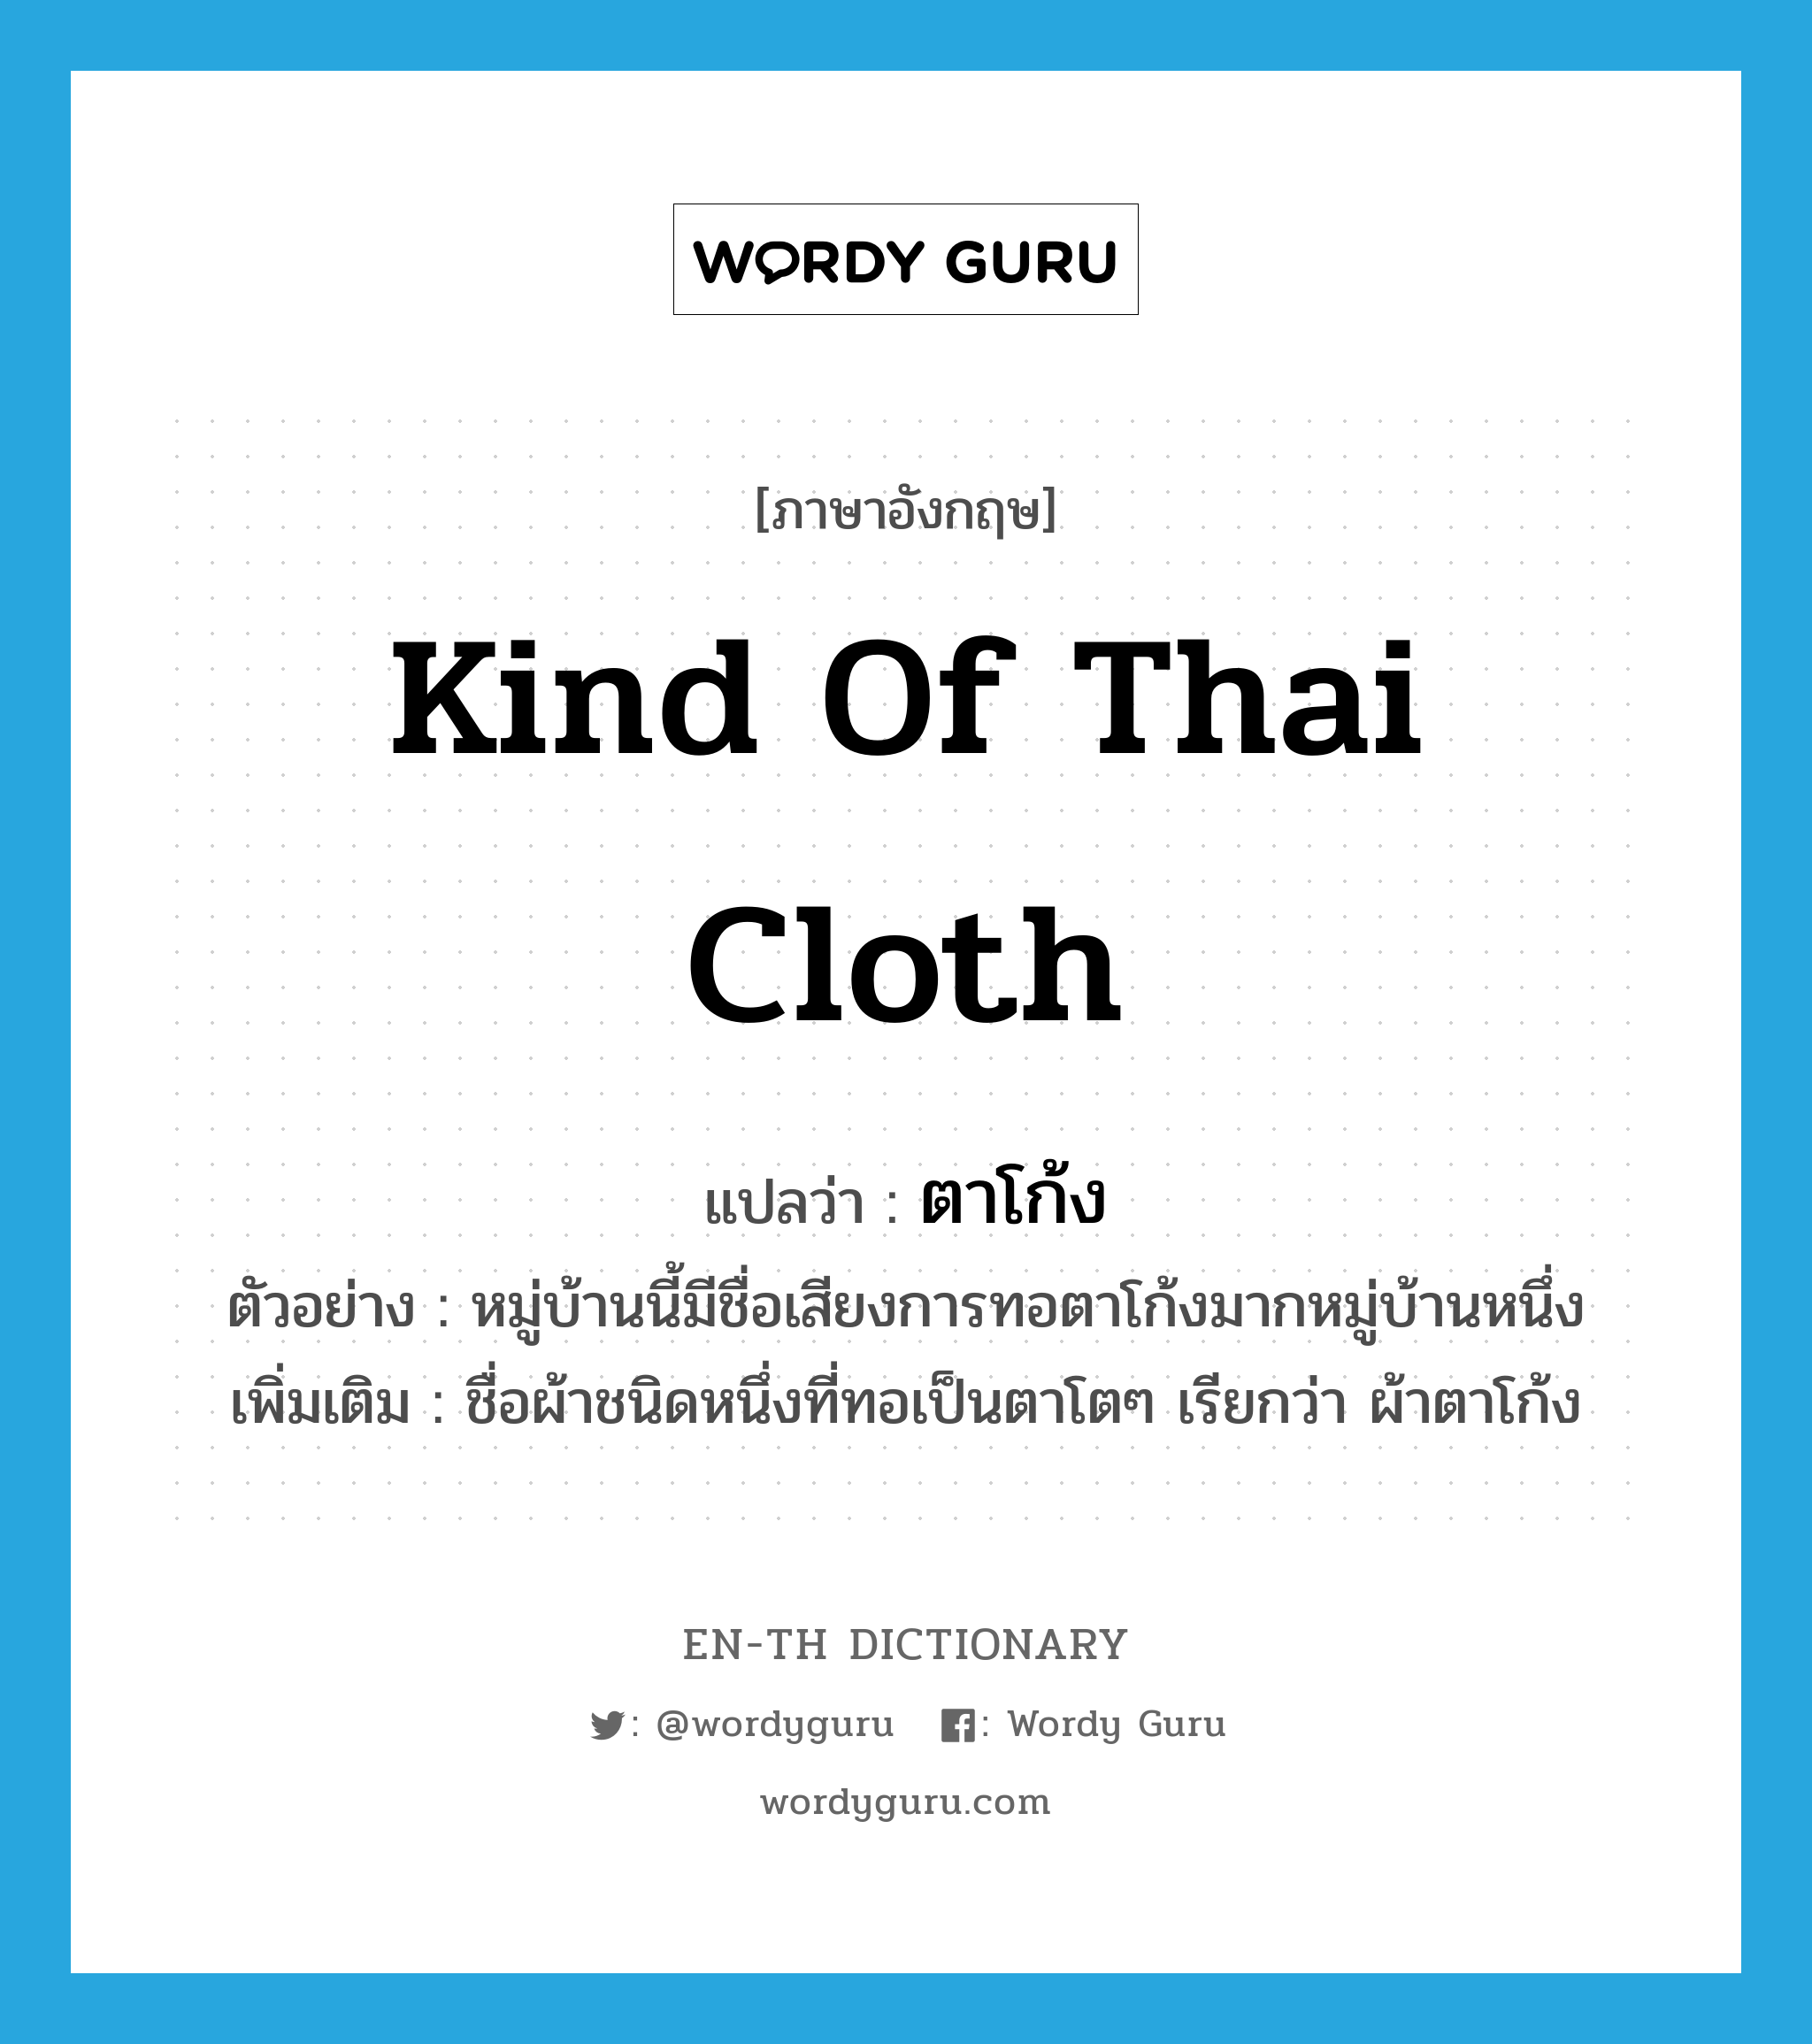 ตาโก้ง ภาษาอังกฤษ?, คำศัพท์ภาษาอังกฤษ ตาโก้ง แปลว่า kind of Thai cloth ประเภท N ตัวอย่าง หมู่บ้านนี้มีชื่อเสียงการทอตาโก้งมากหมู่บ้านหนึ่ง เพิ่มเติม ชื่อผ้าชนิดหนึ่งที่ทอเป็นตาโตๆ เรียกว่า ผ้าตาโก้ง หมวด N